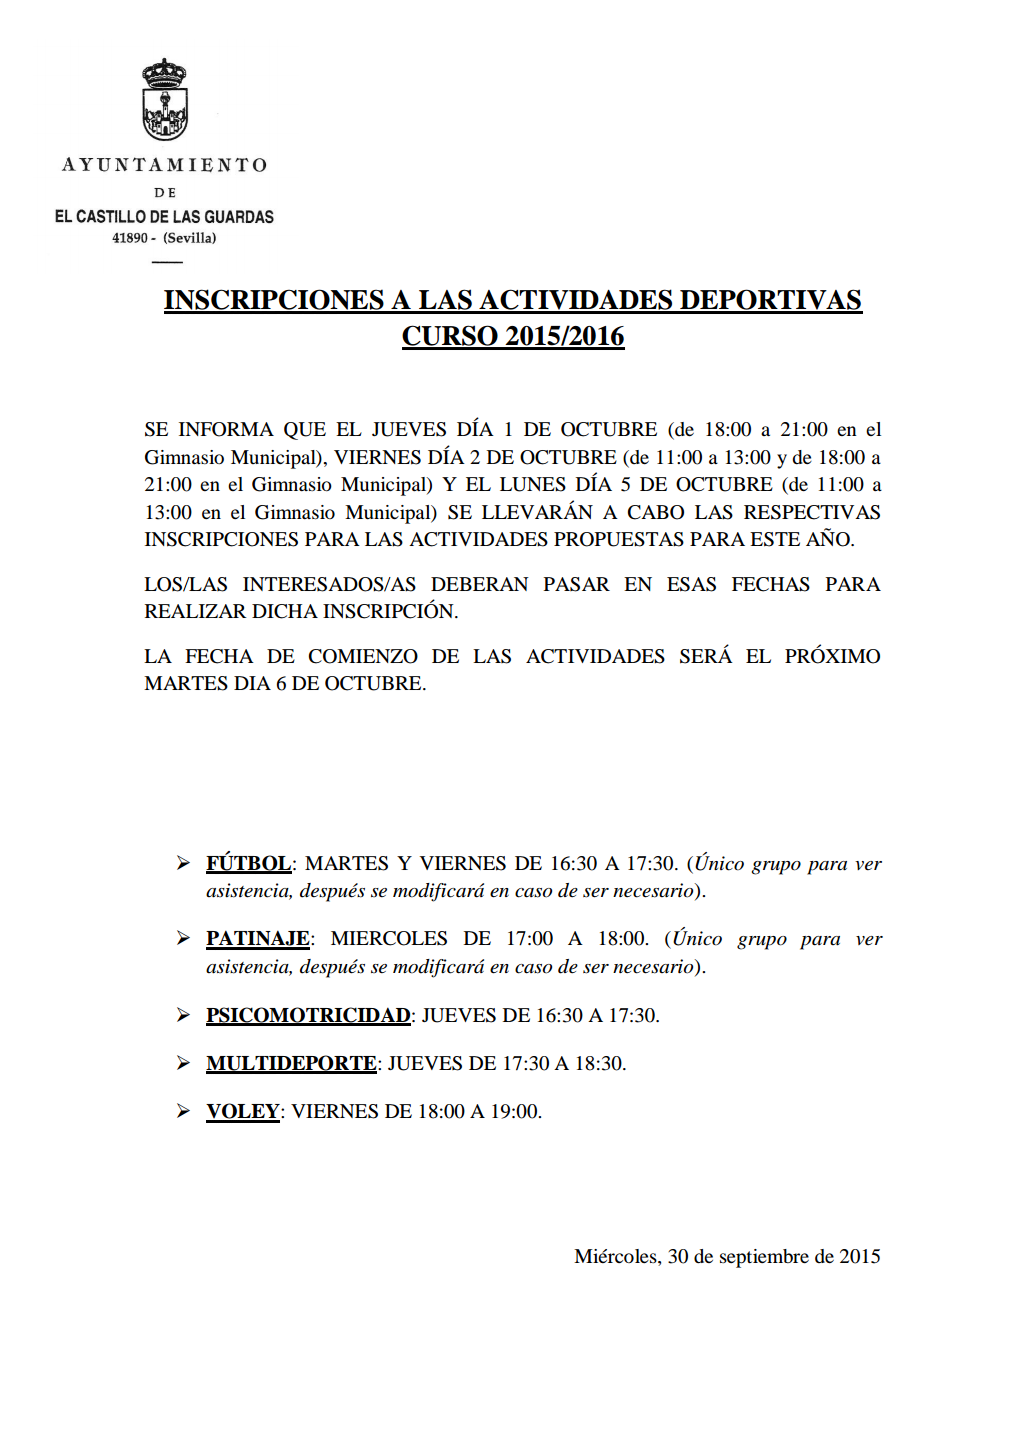 Inscripciones Actividades Deportivas Curso 2015 - 2016